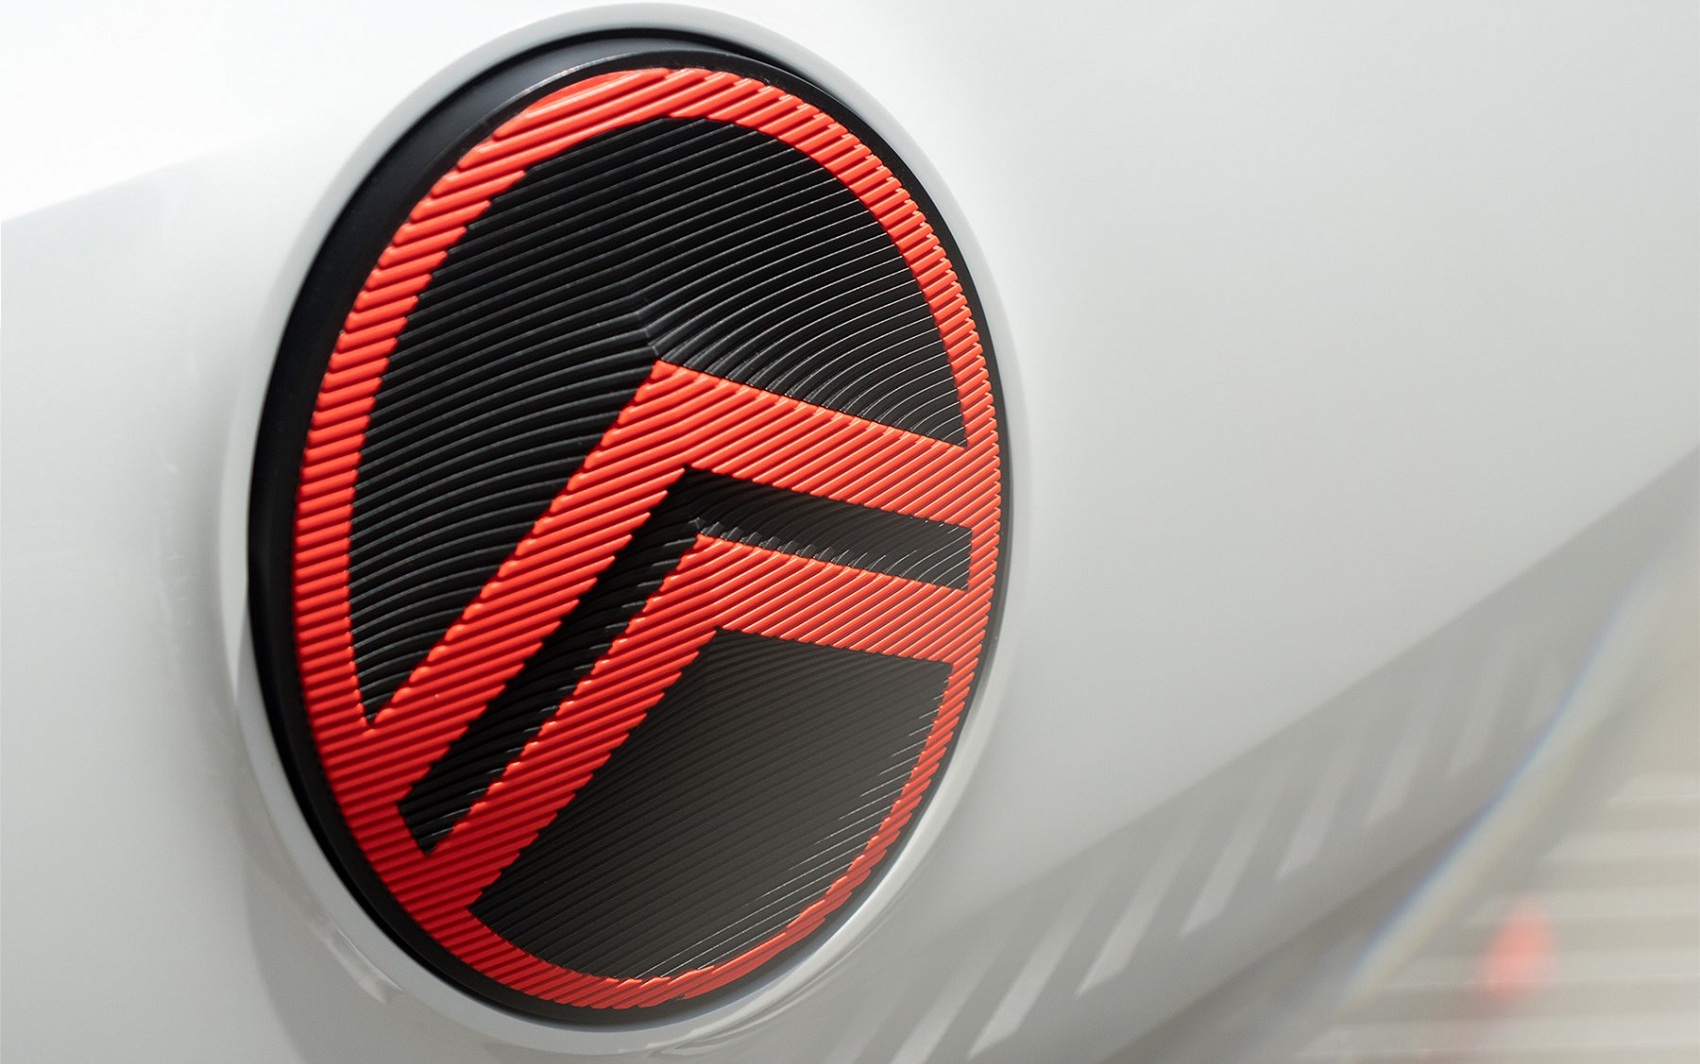 Citroën lấy ý tưởng từ logo cổ điển để tôn vinh kỉ nguyên xe điện